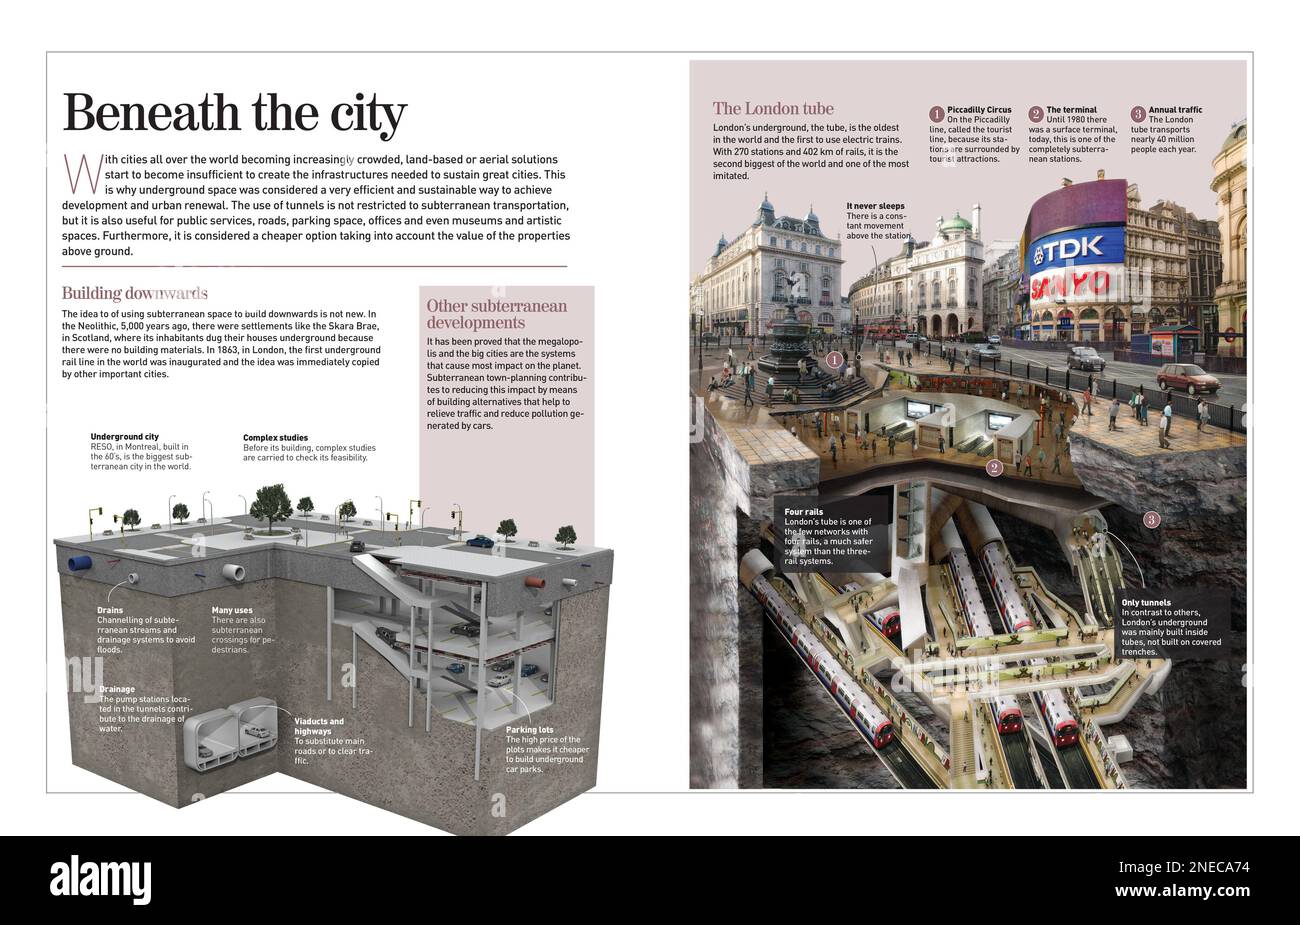 Infografica sui fondali delle città di cablaggio per costruire infrastrutture dalla fine del 20th° secolo, con dettagli sul reso di Montreal e sul tubo di Londra. [Adobe InDesign (.indd); 4960x8503]. Foto Stock